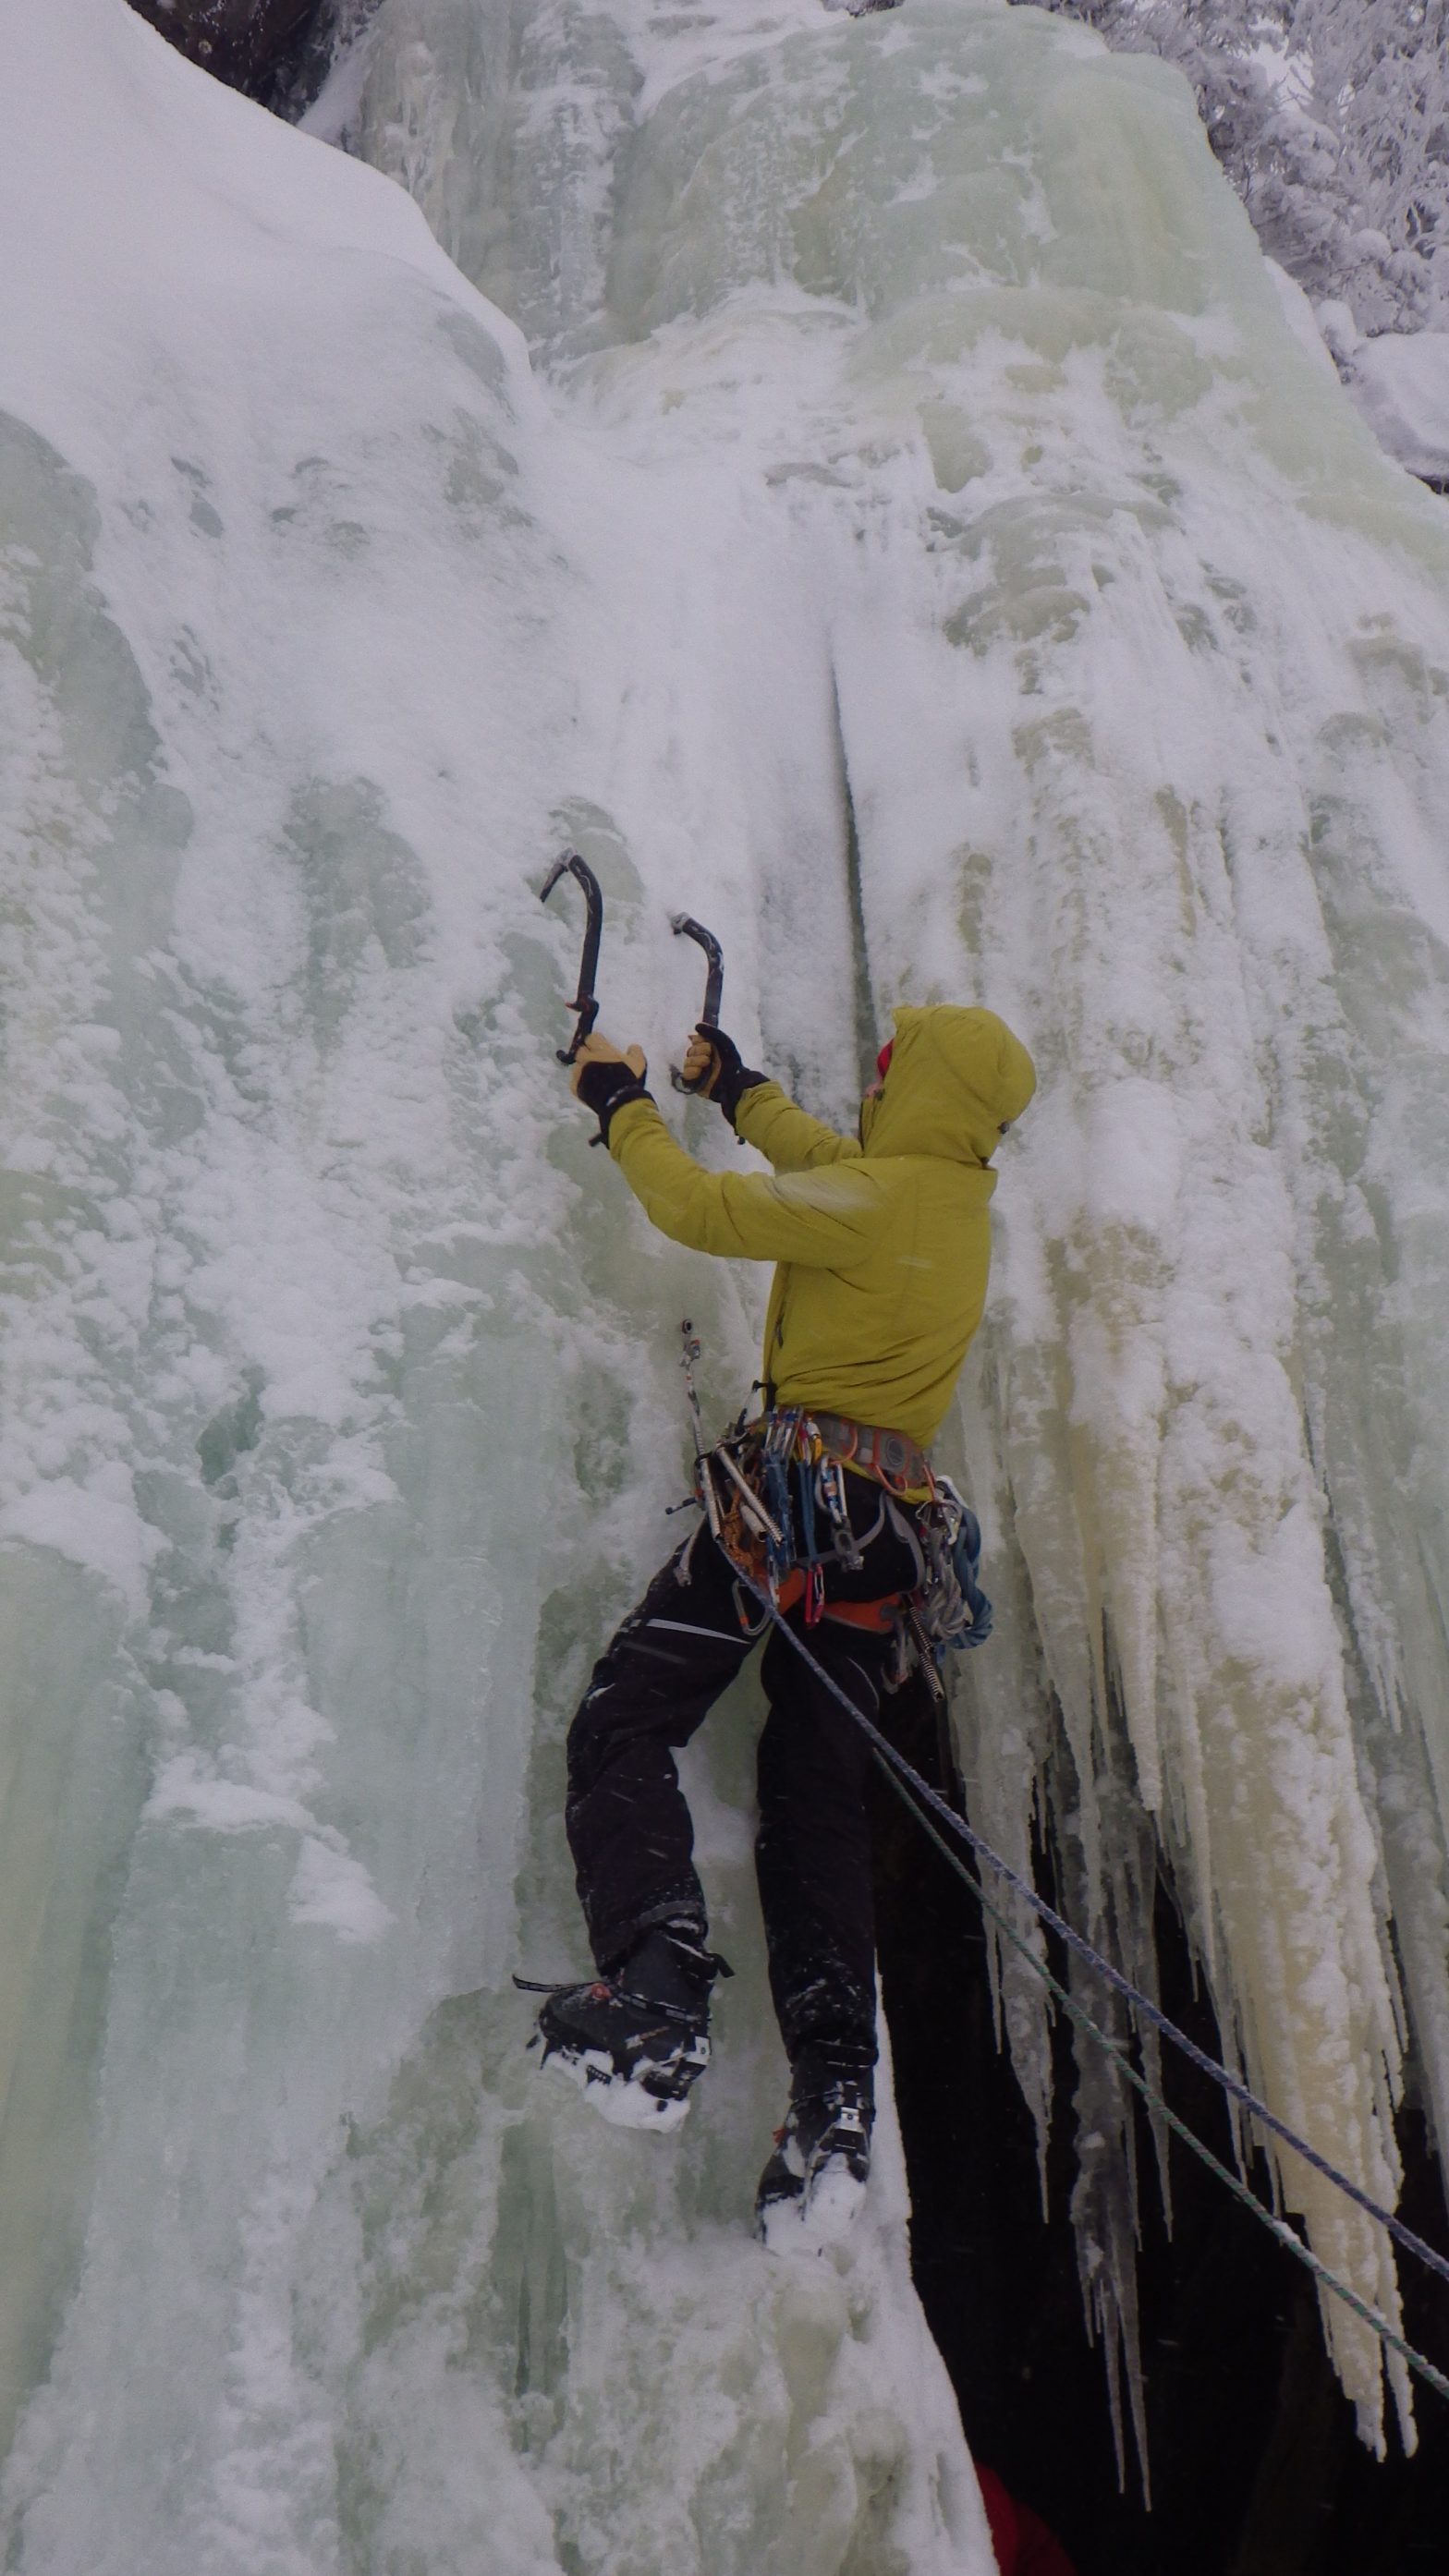 Ice climbing in Rjukan, Norway